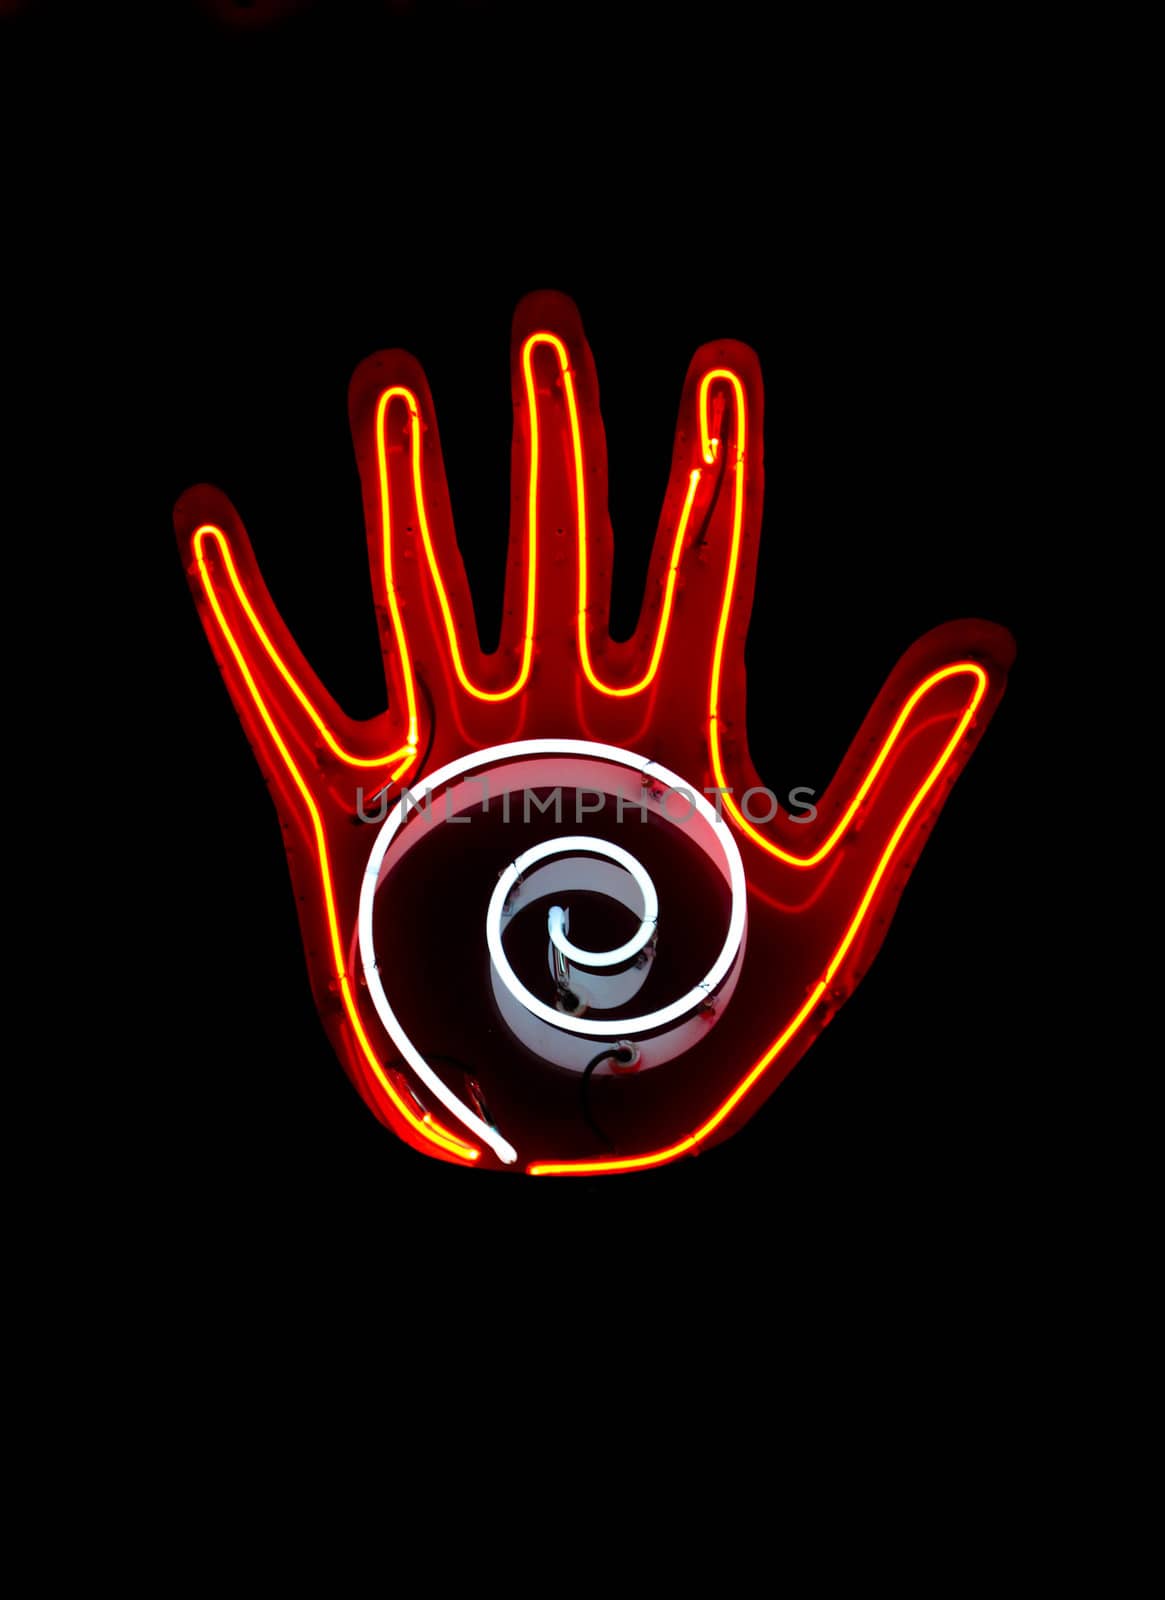 Neon sign often found in Palm Reader's window